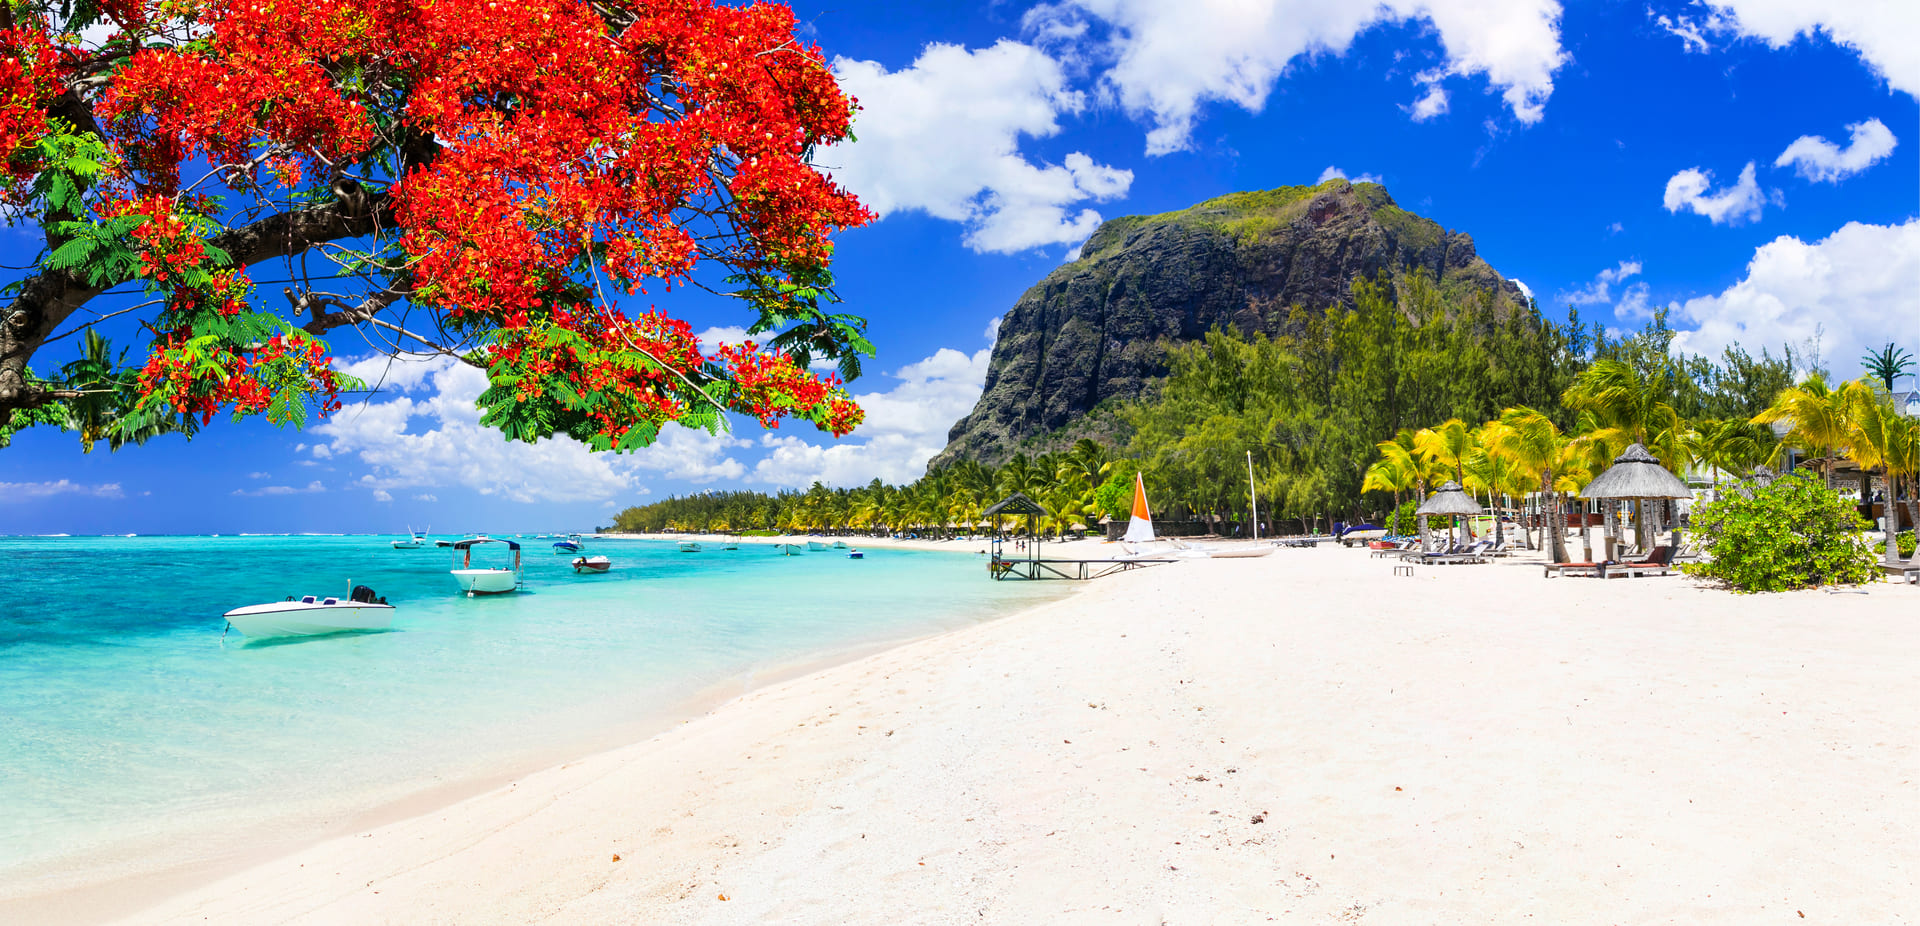 A beach in Plaisance, Mauritius